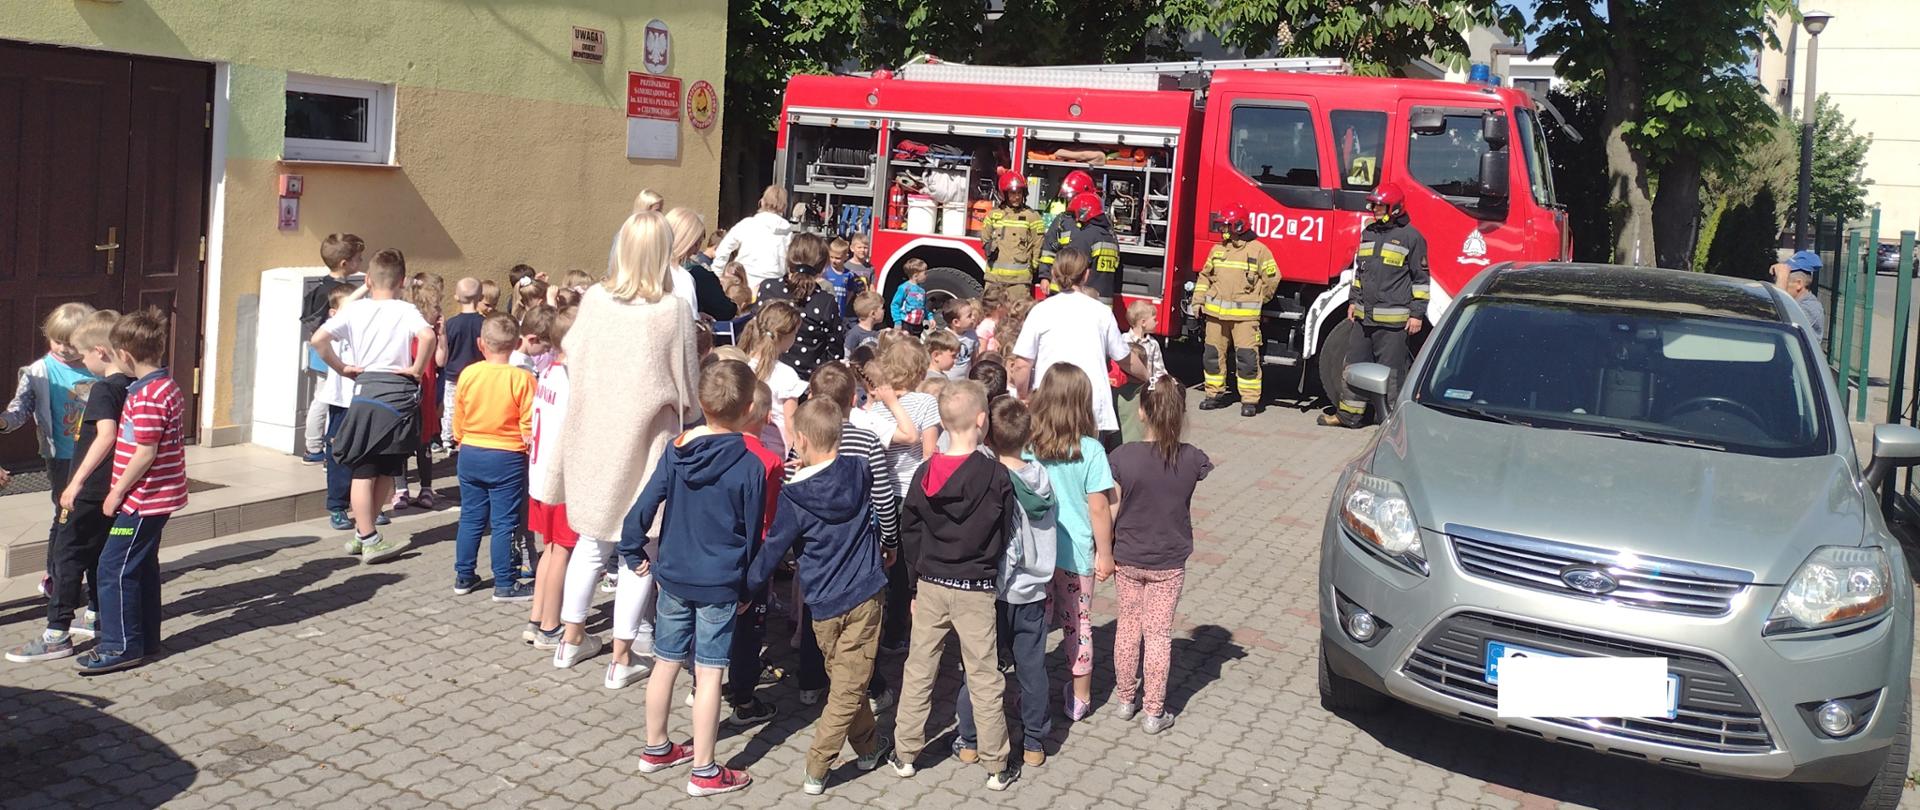 Na zdjęciu widać dzieci wraz z wychowawczyniami oraz strażaków ubranych w ubrania bojowe stojących na tle samochodu gaśniczego.